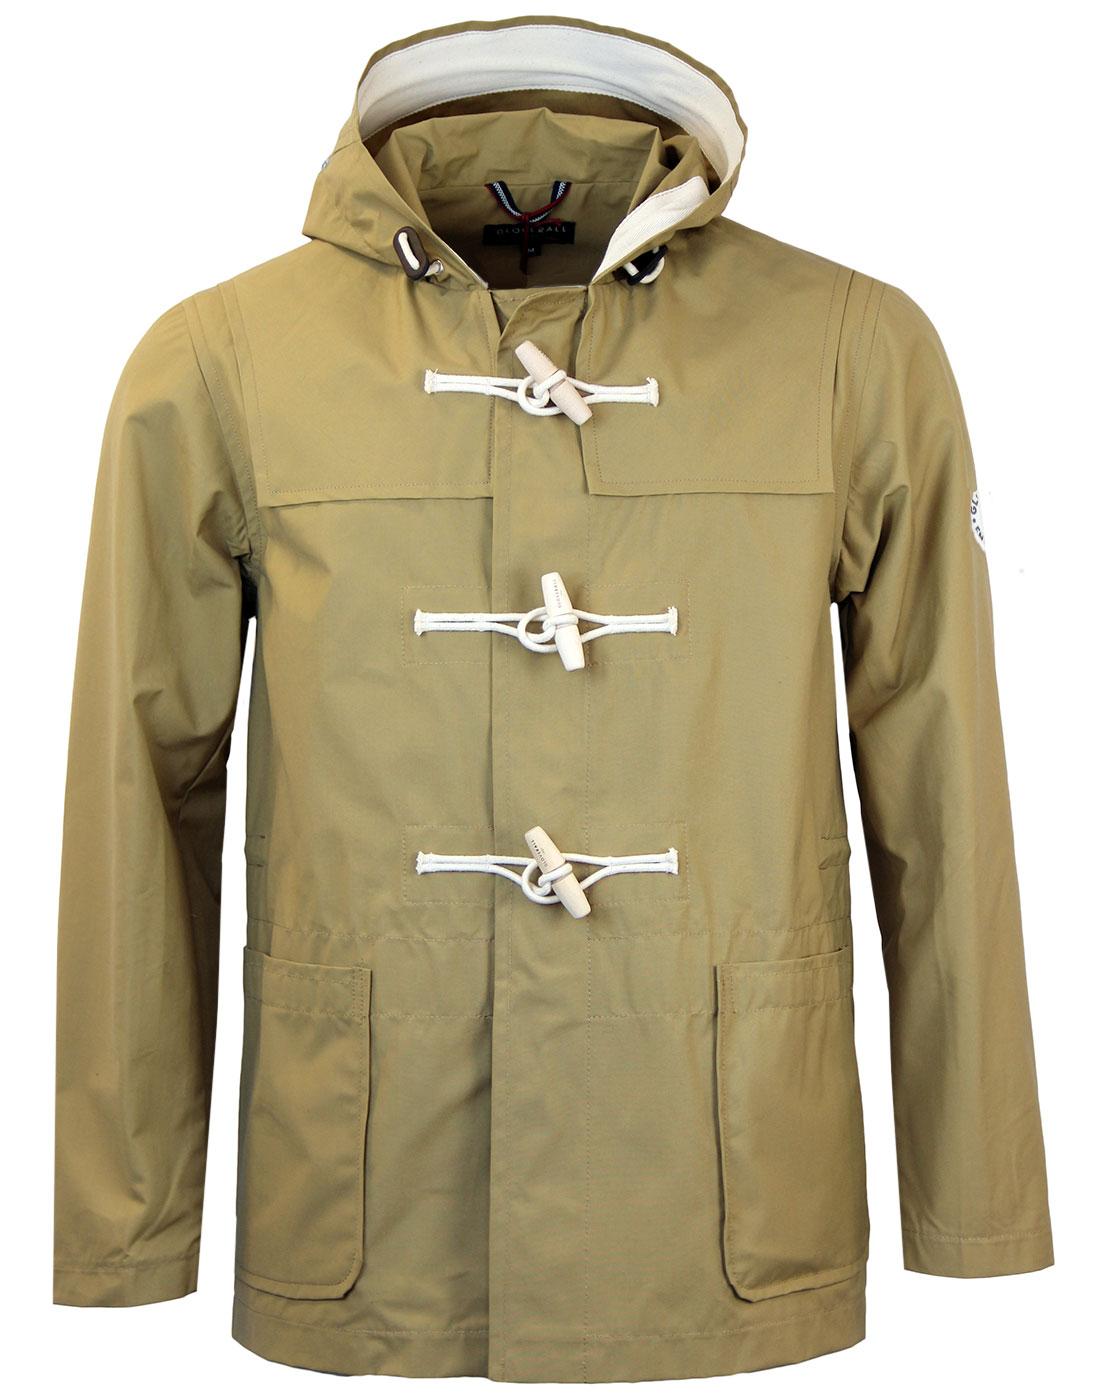 Gloverall Duffle Coats & Jackets For Men | Atom Retro